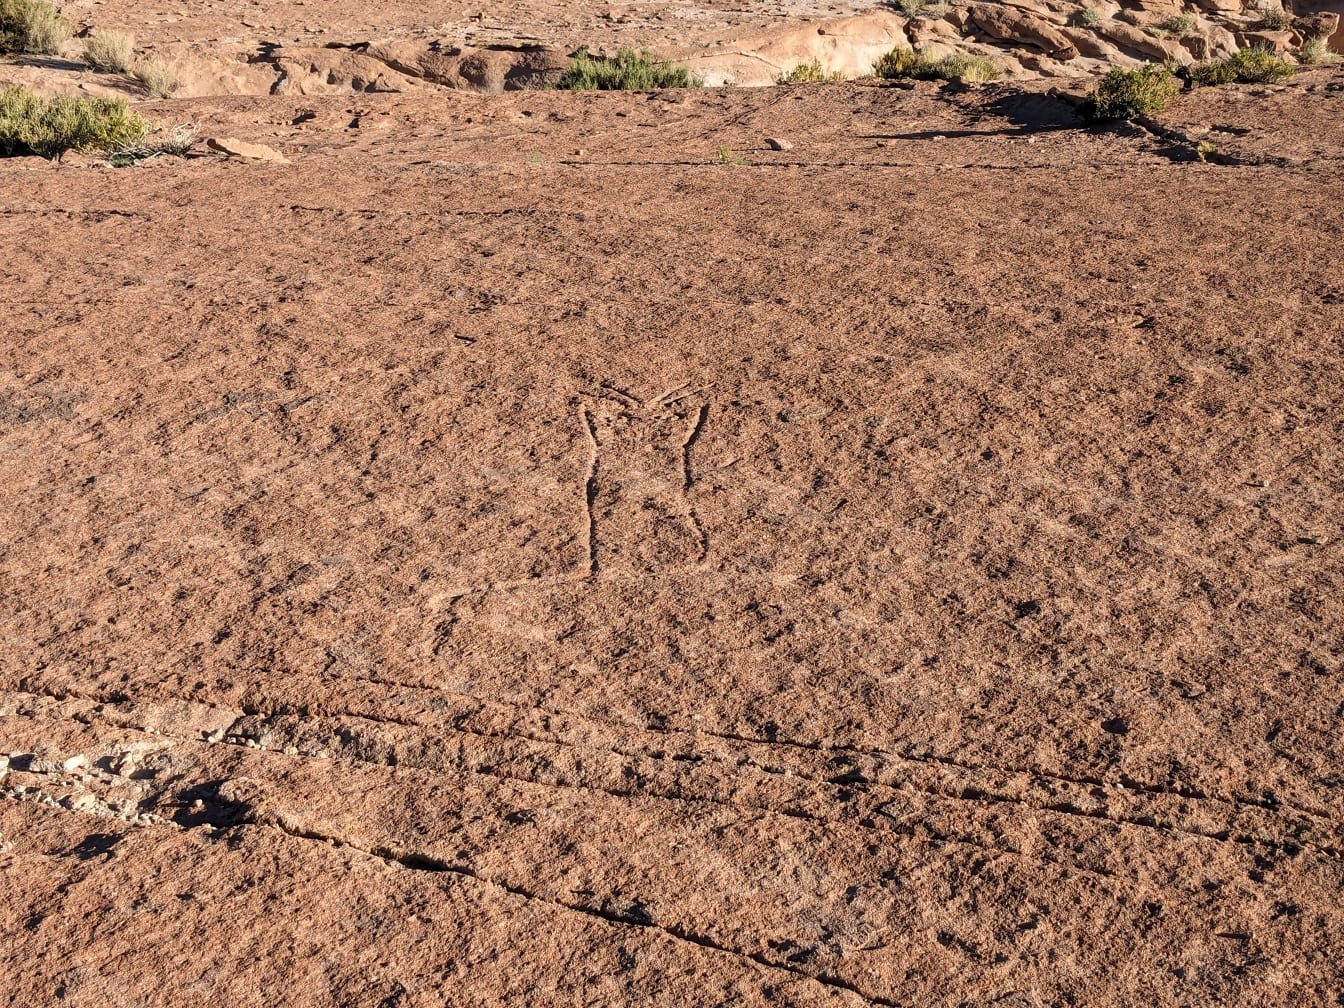 Maadoitetut kalliokaiverrukset autiomaassa, jotka ovat samanlaisia kuin Nazcan linjat